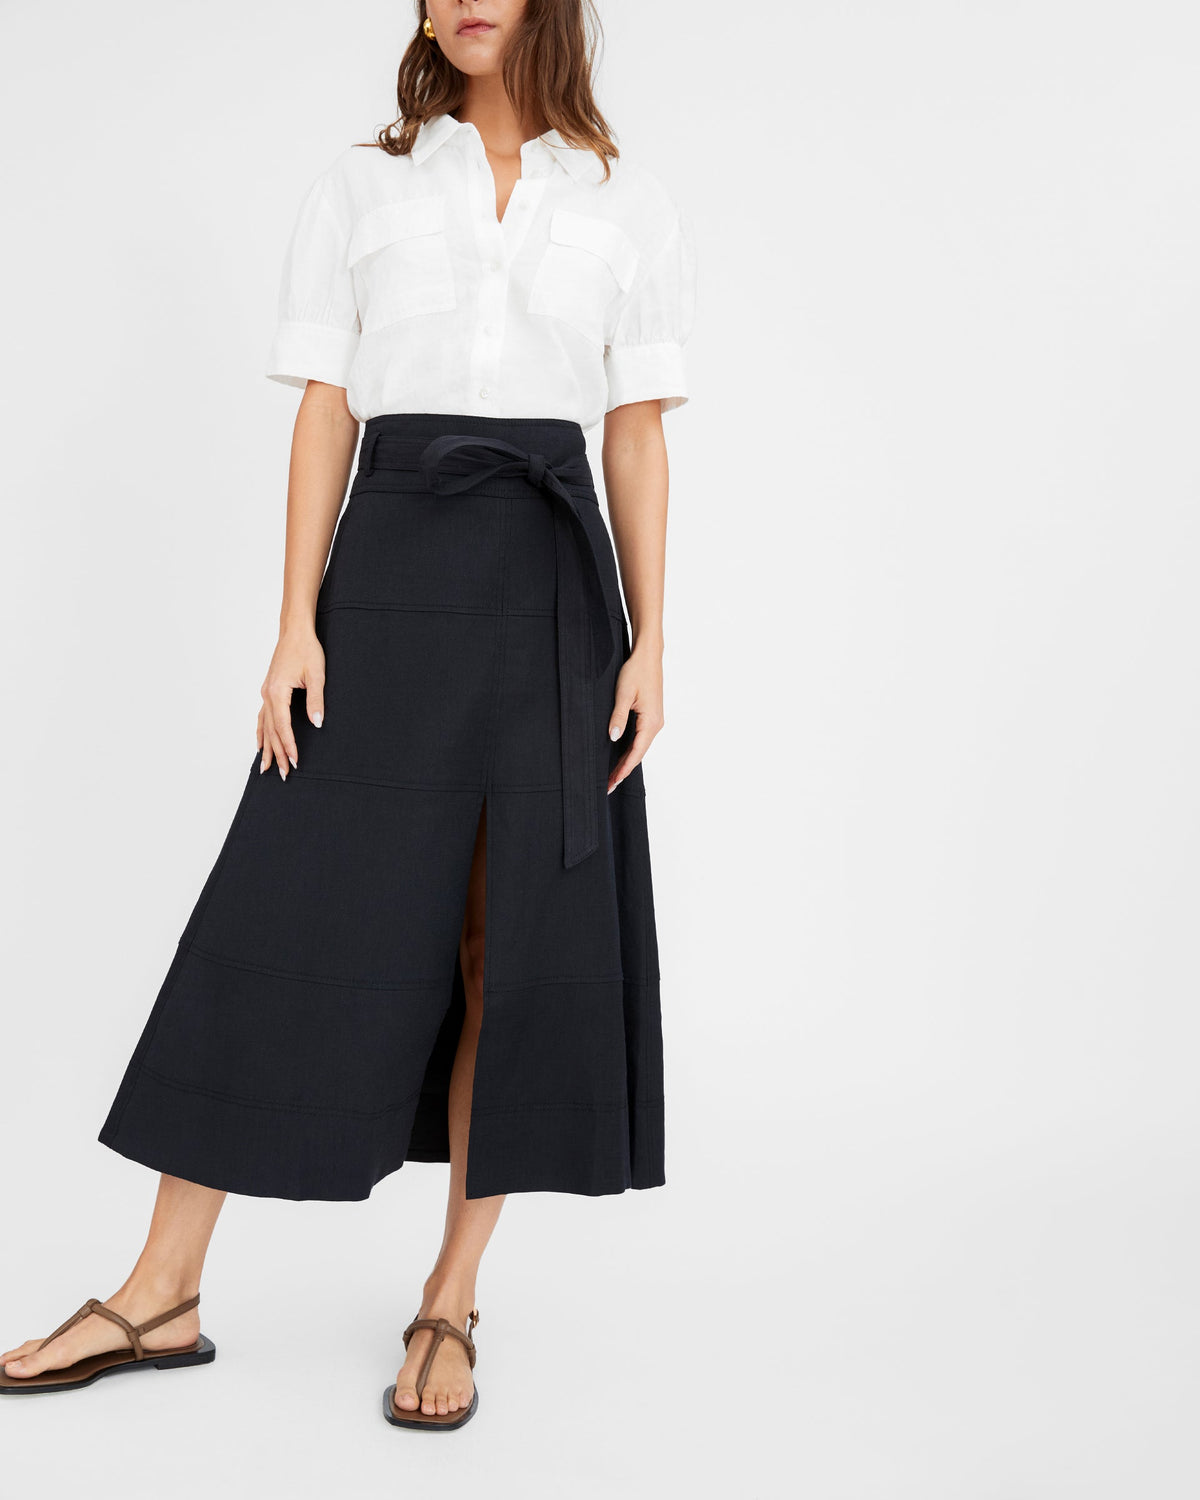 Hudson Skirt in Black Linen